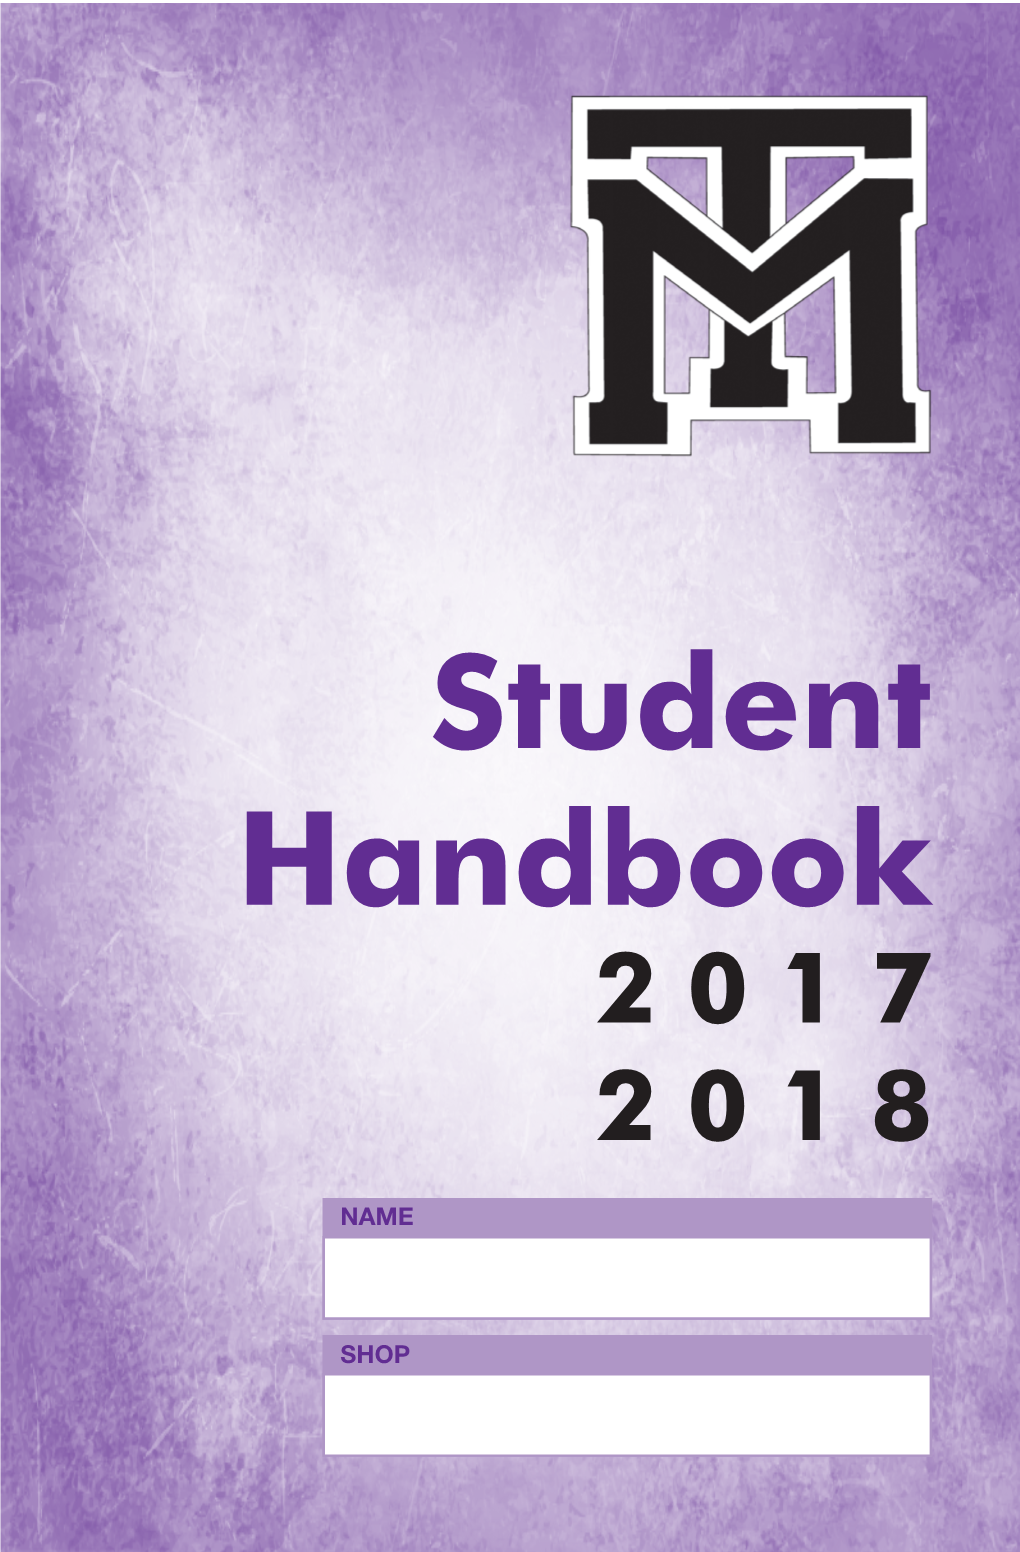 Student Handbook 2 0 1 7 2 0 1 8